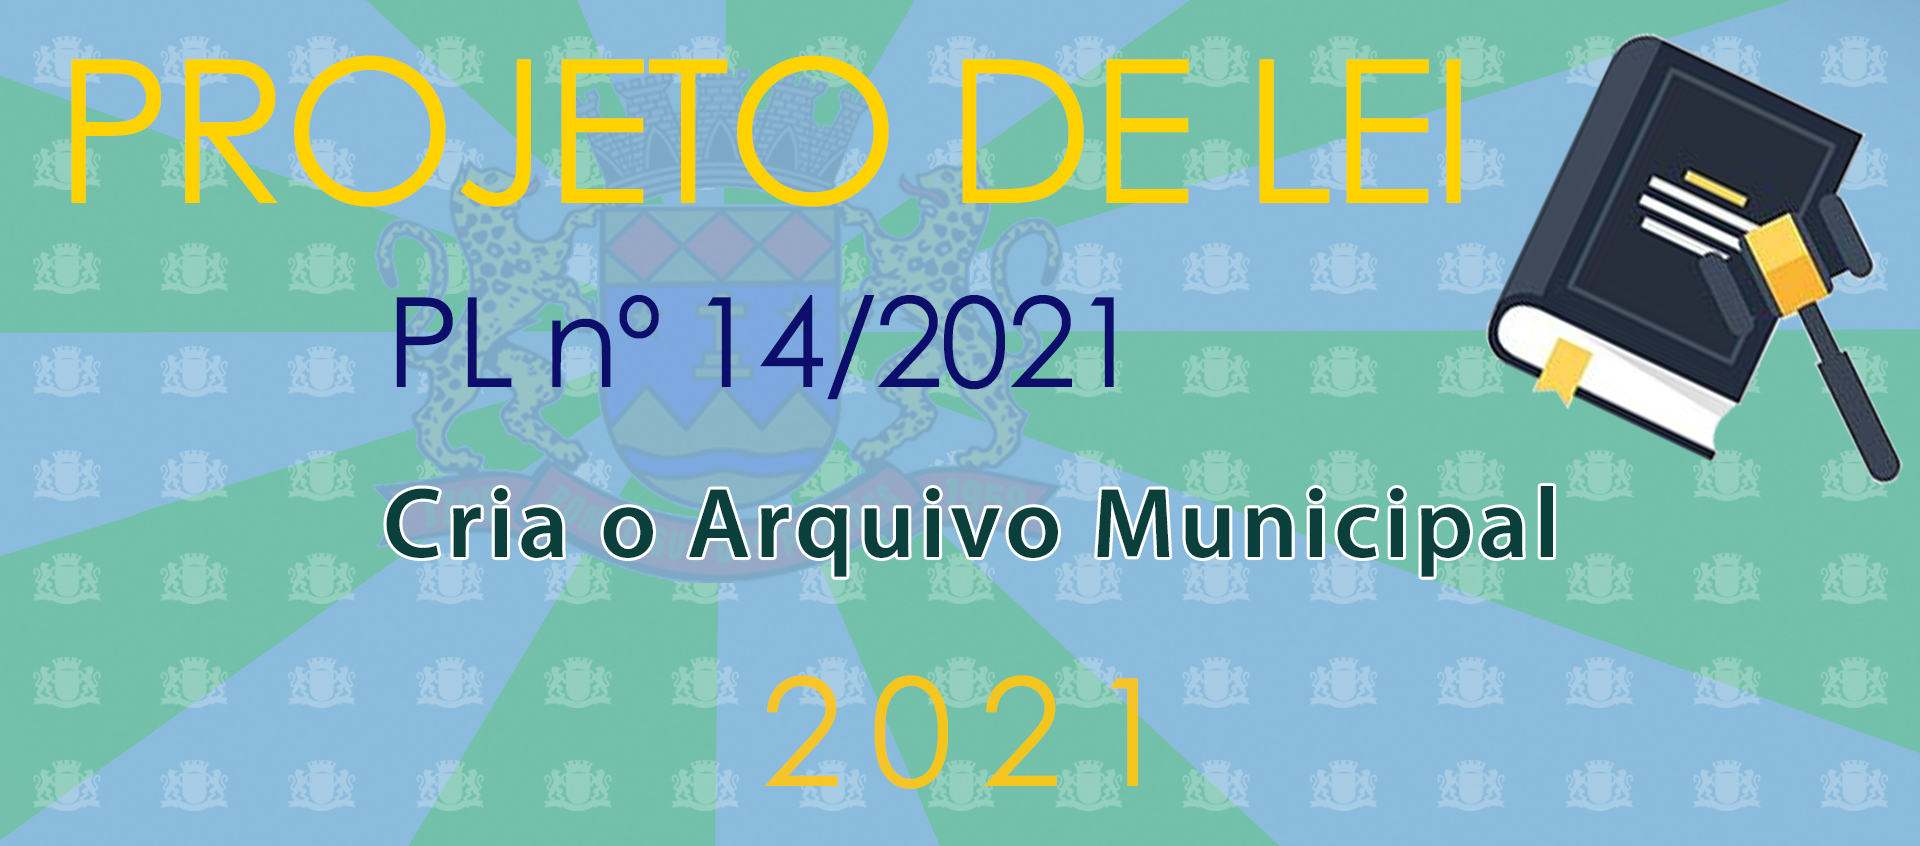 Projeto de Lei nº 14/2021 - Criação do Arquivo Municipal